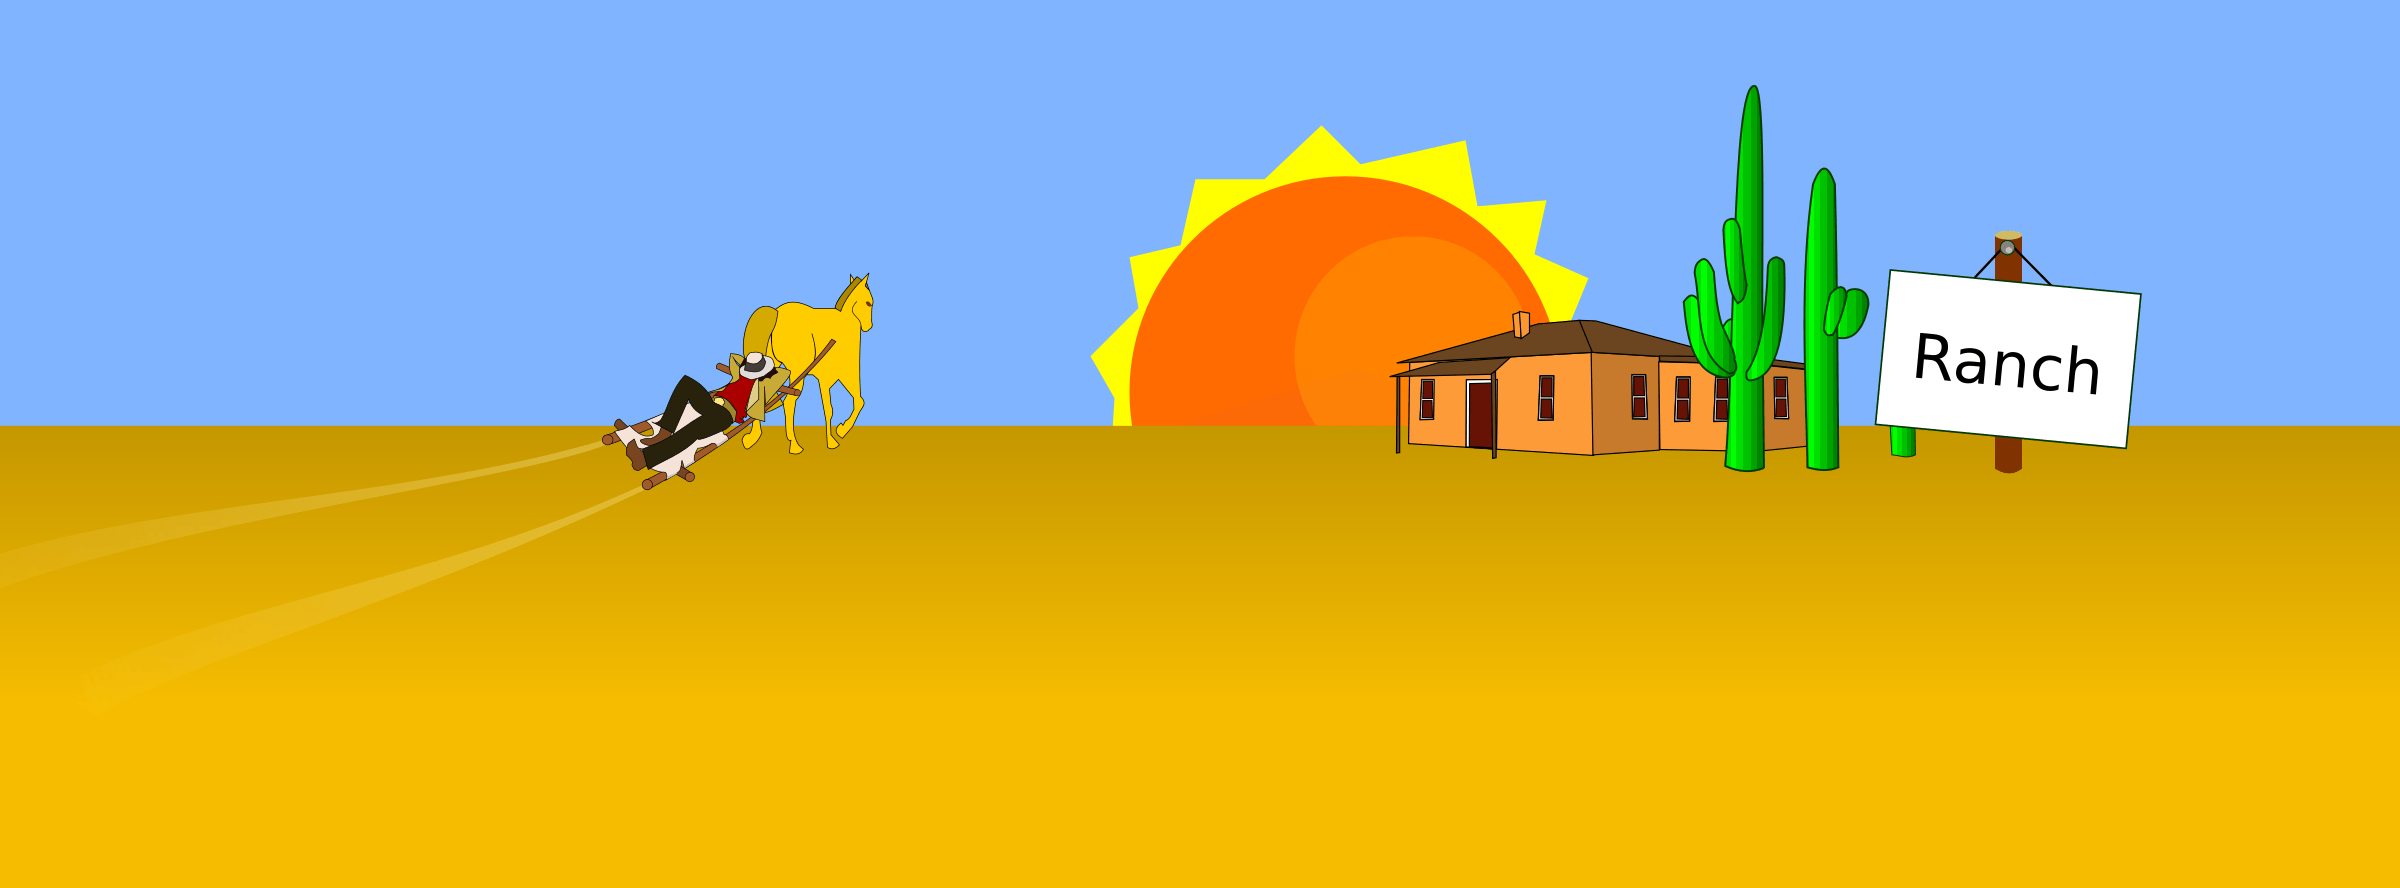 desert scene clip art